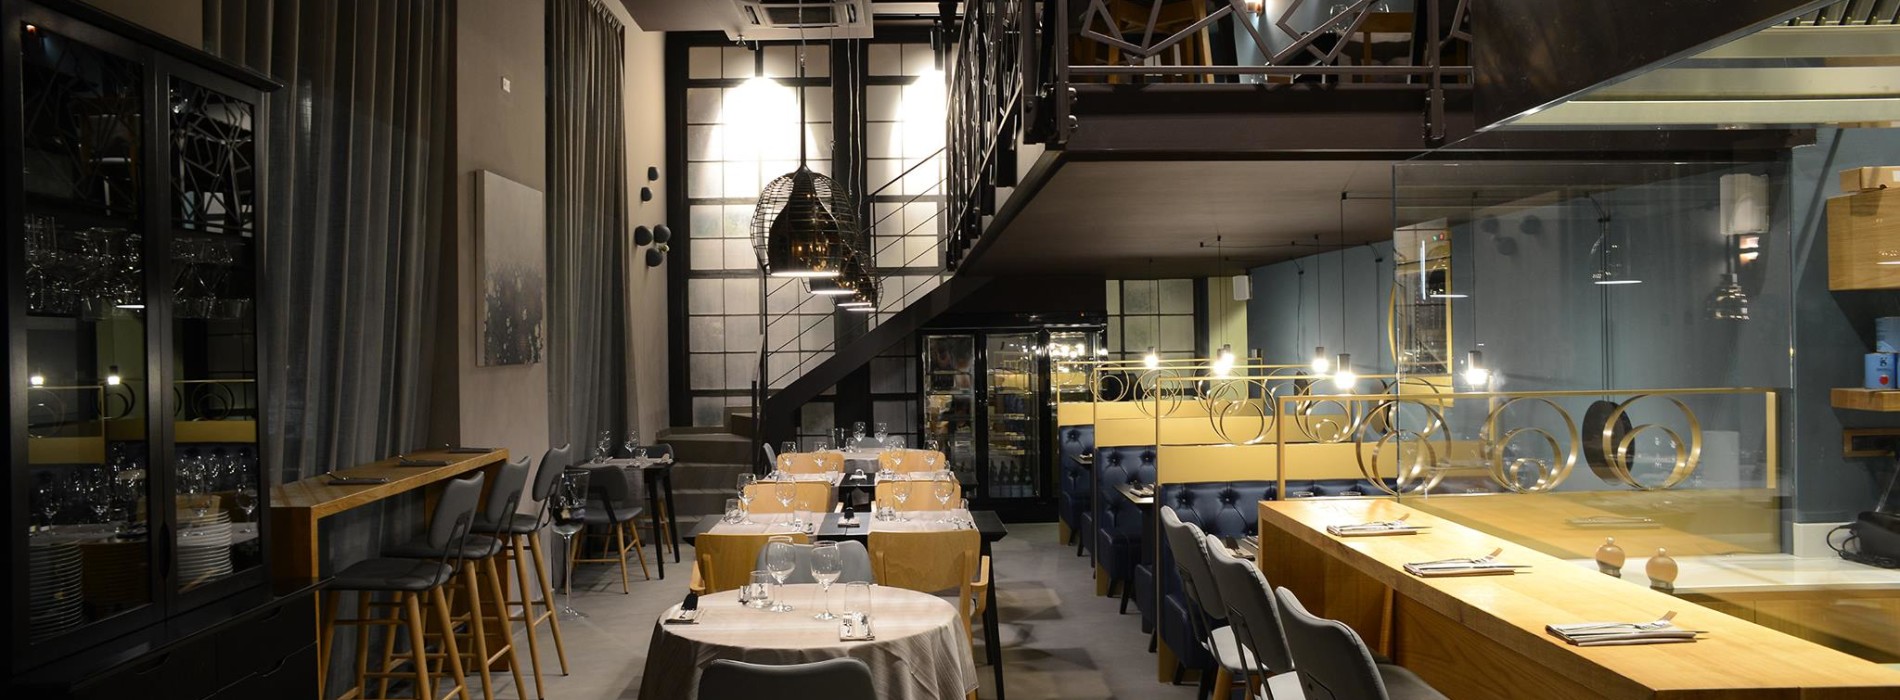 Nuovi ristoranti Milano ottobre 2015: dalla cucina balcanica al sake giapponese fino alla pizza gourmet